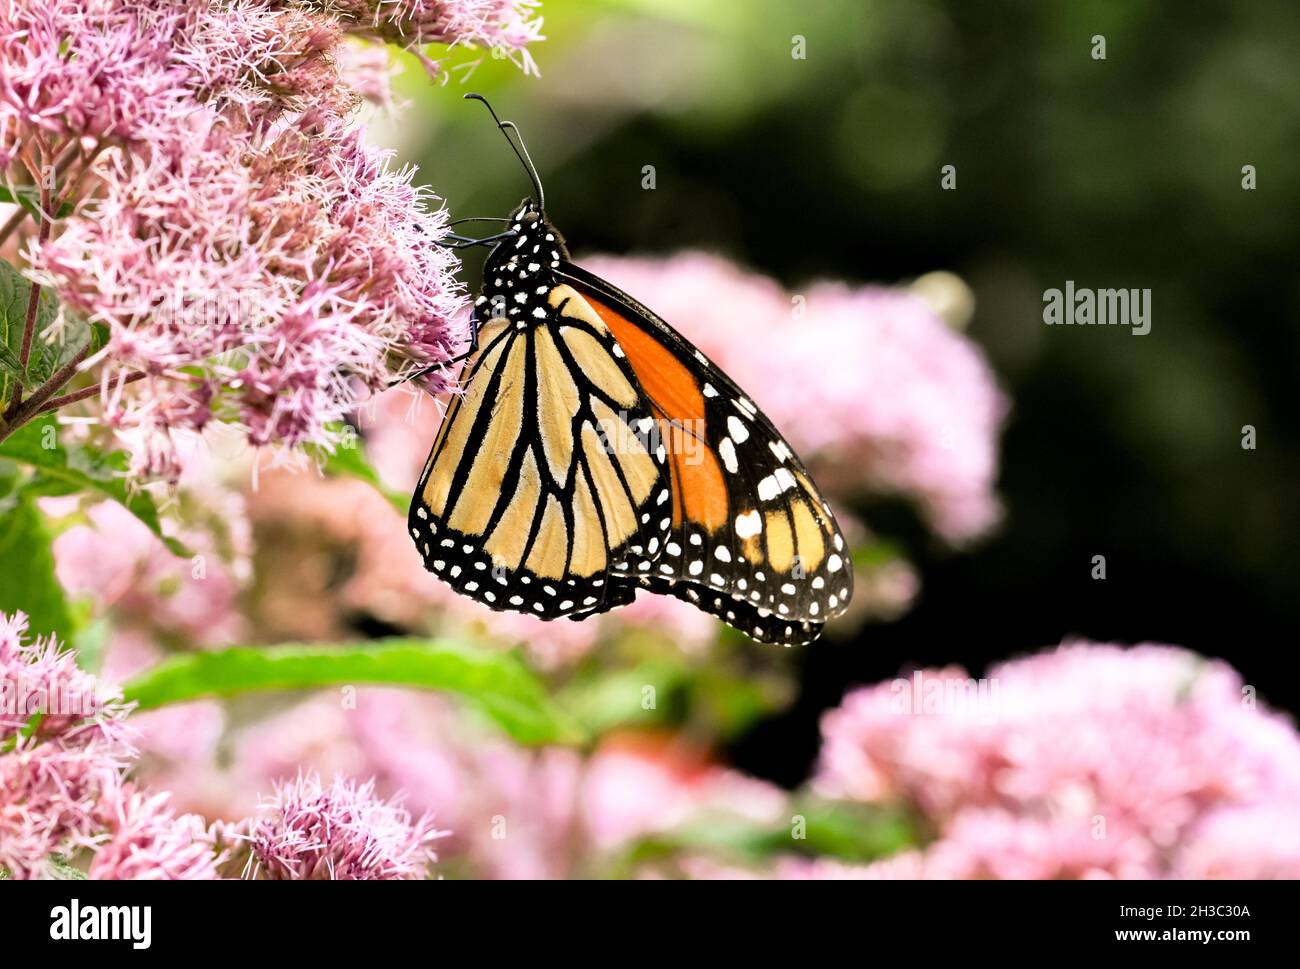 Mariposa monarca (Danaus plexippus) alimentándose de las flores rosadas de Joe-Pye Weed (Eupatorium purpureum). Vista lateral. Espacio de copia. Foto de stock